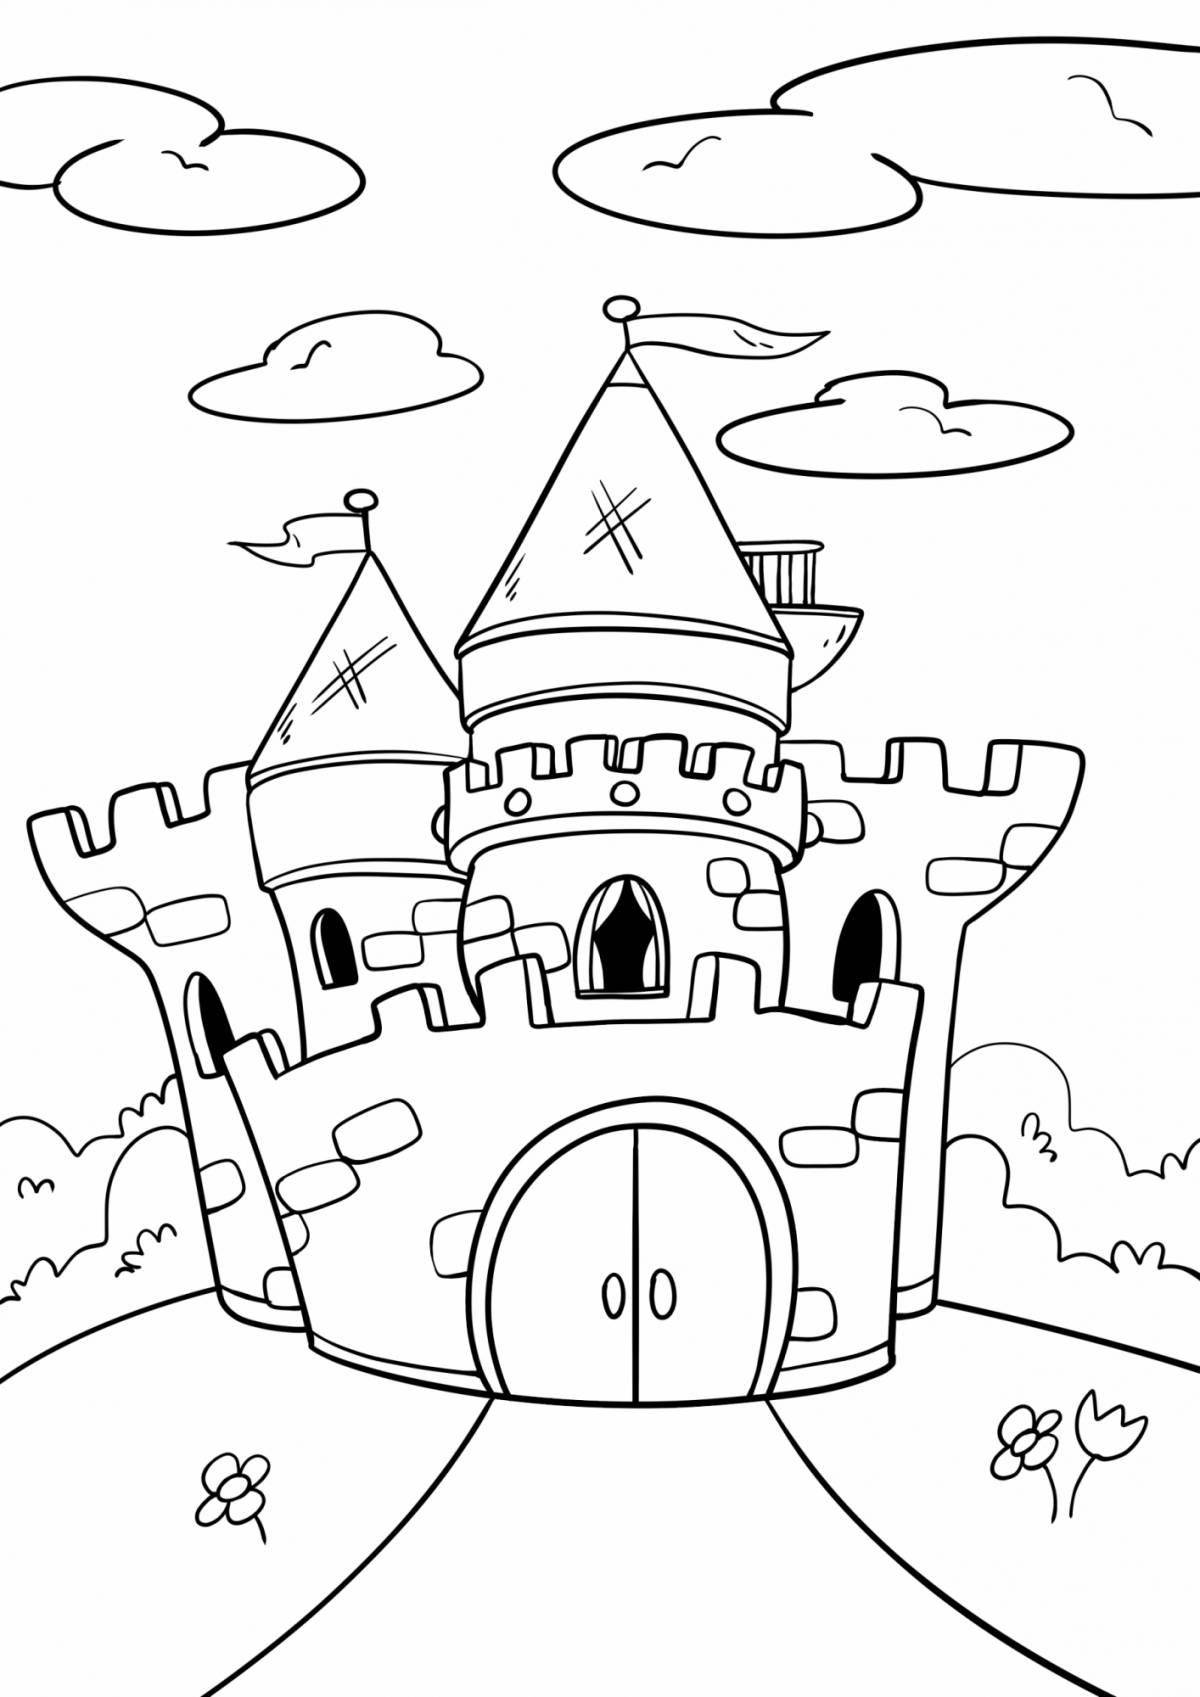 Раскраска яркий сказочный замок